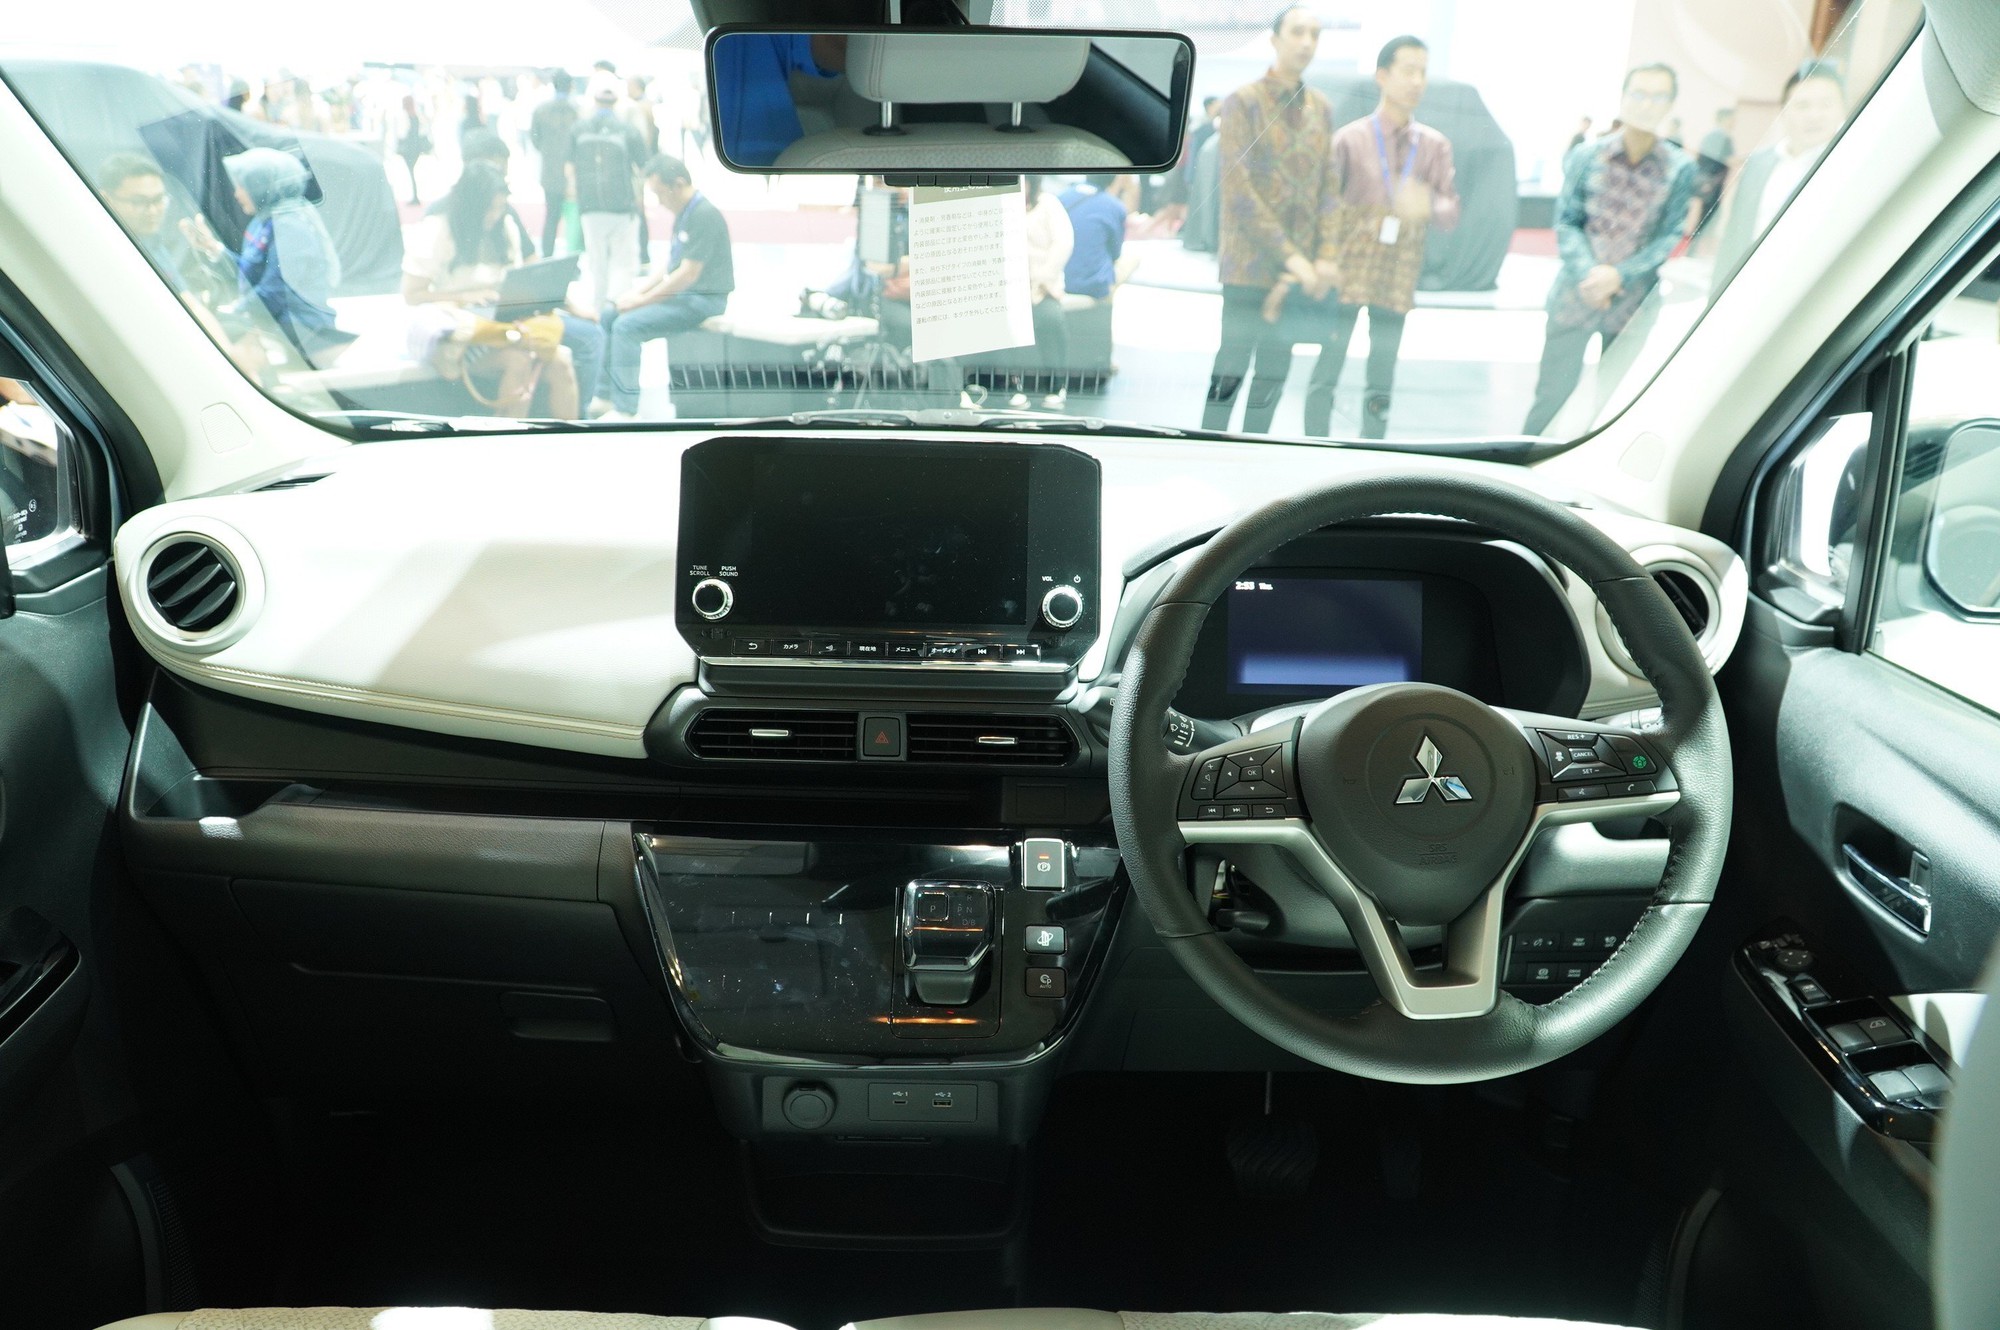 Cận cảnh xe điện Mitsubishi eK X EV có khả năng về Việt Nam   - Ảnh 6.